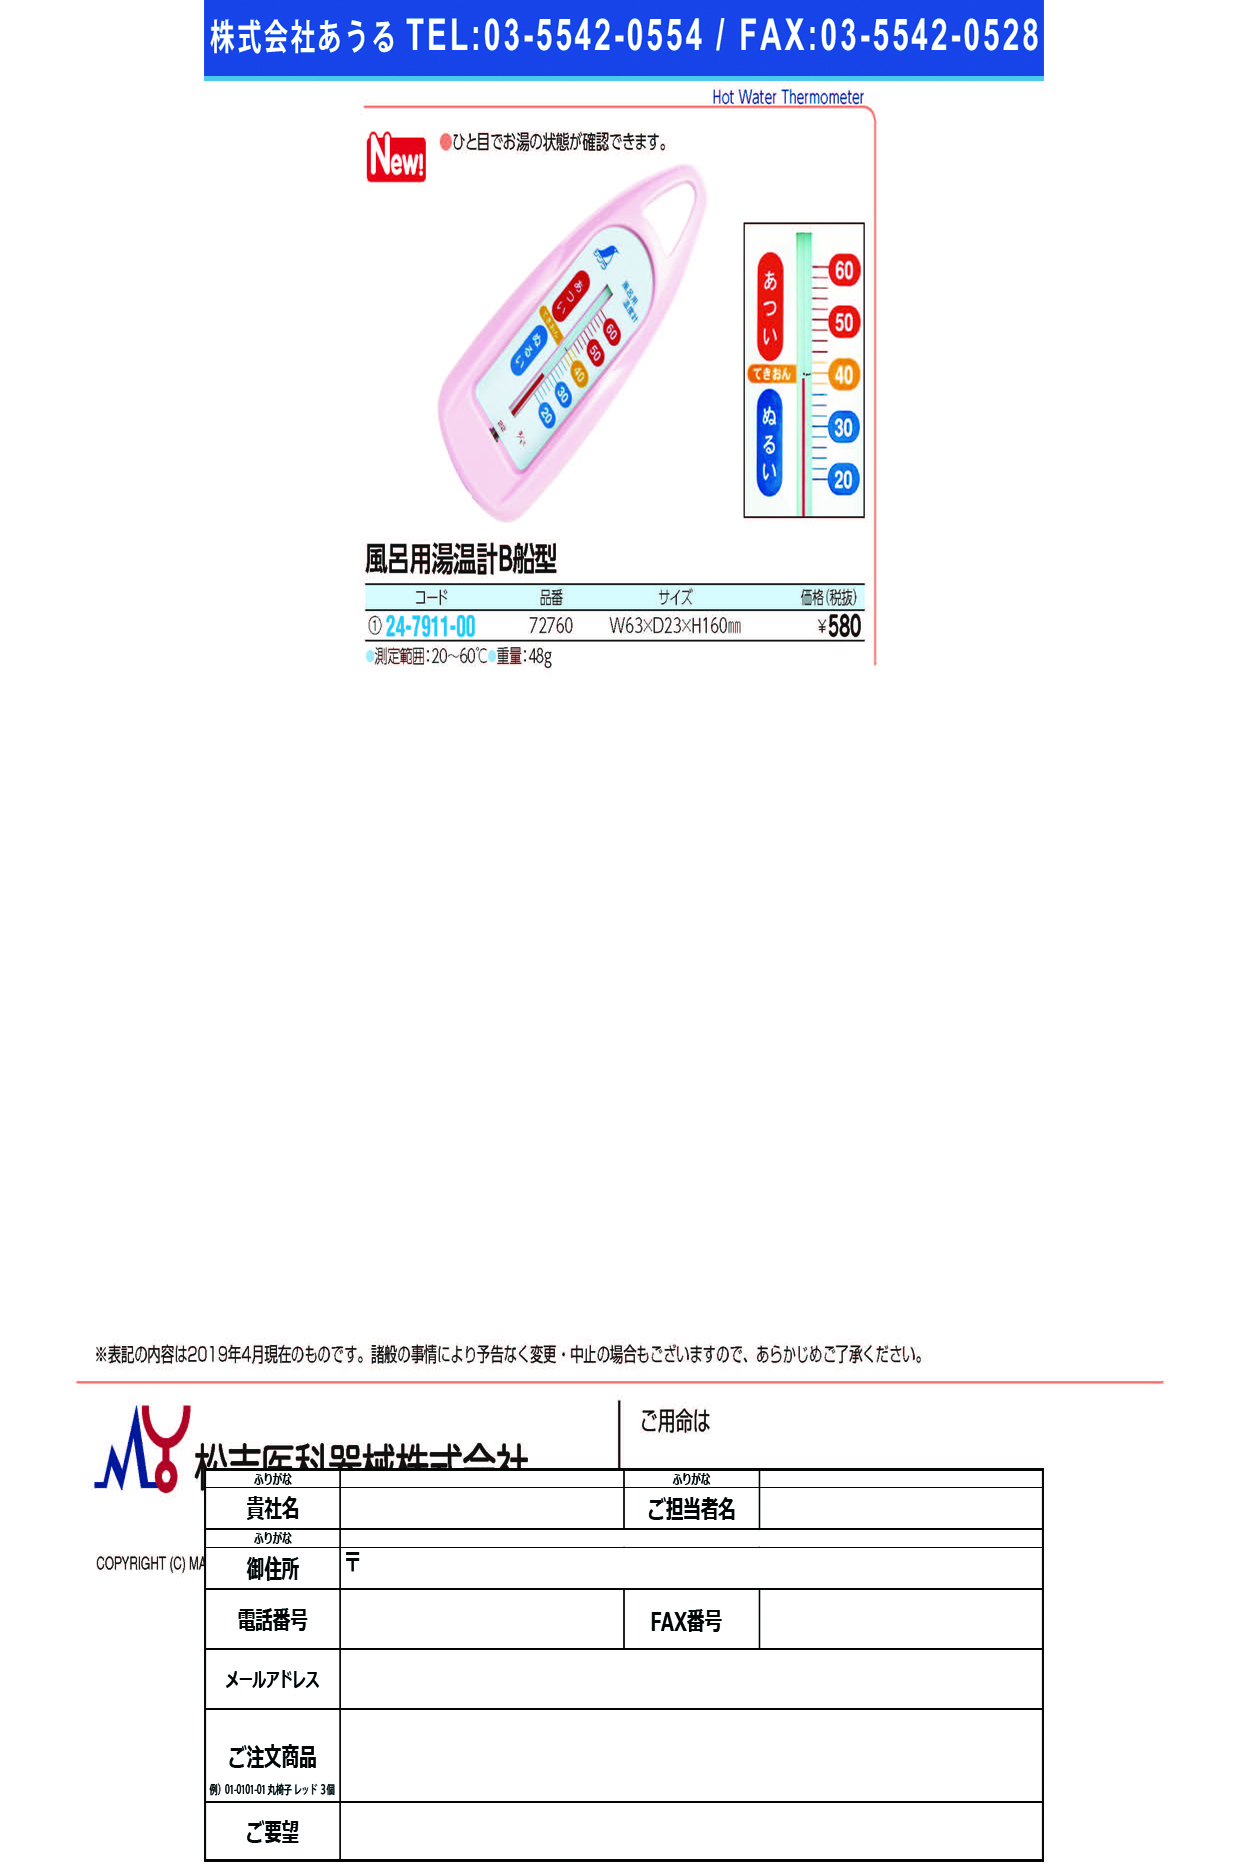 風呂用湯温計Ｂ船型72760(ﾋﾟﾝｸ) ﾌﾛﾖｳﾕｵﾝｹｲBﾌﾅｶﾞﾀ(シンワ測定)